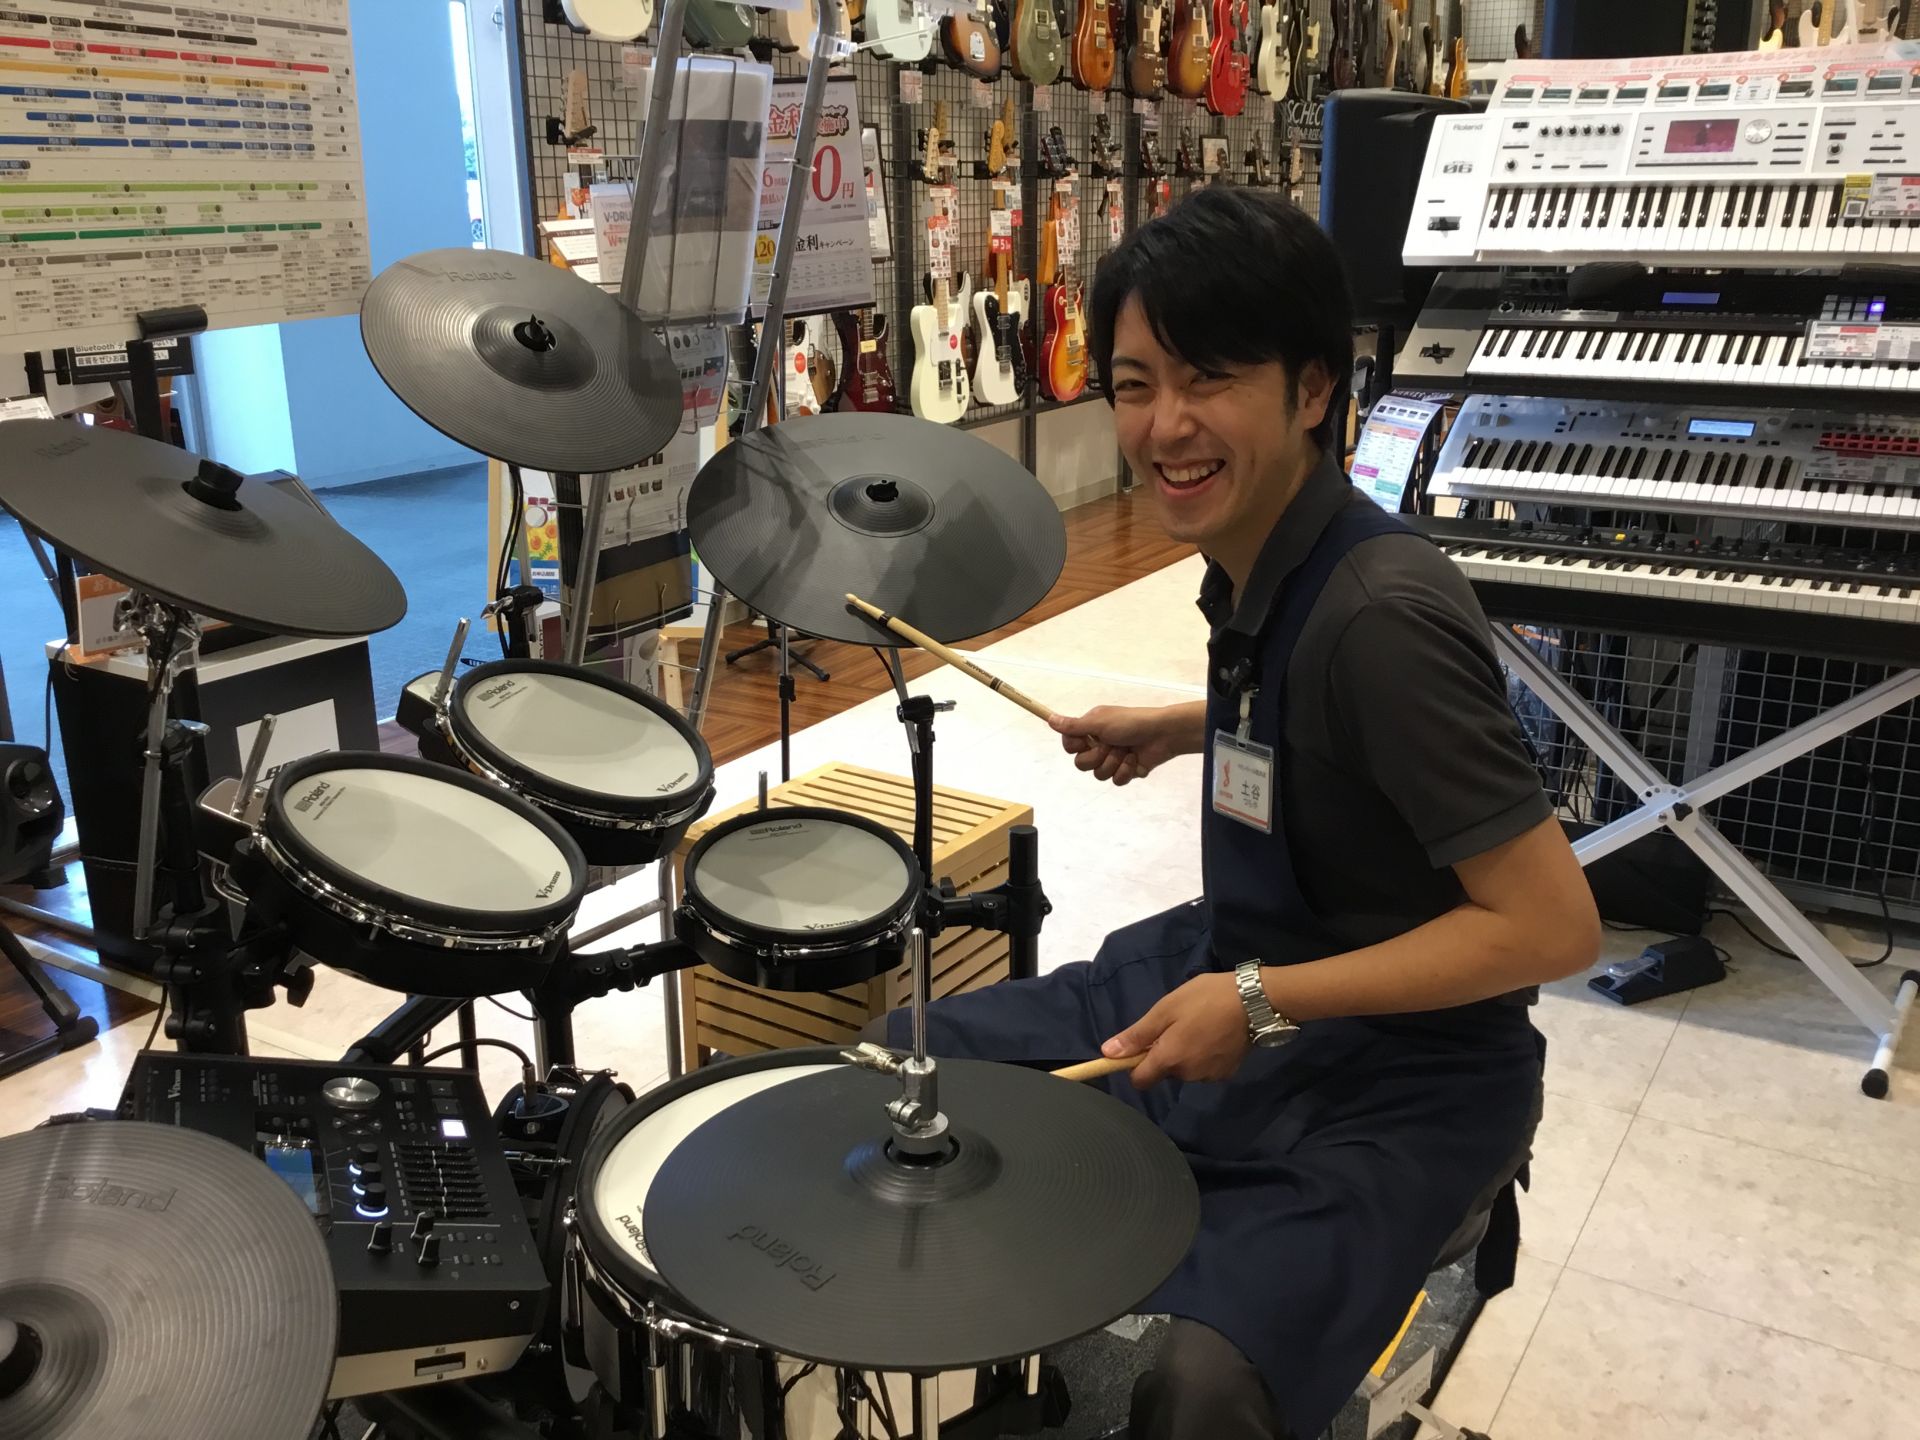 ドラム 電子ドラムをお探しなら島村楽器イオンモール熊本店へ 1 2更新 イオンモール熊本店 店舗情報 島村楽器